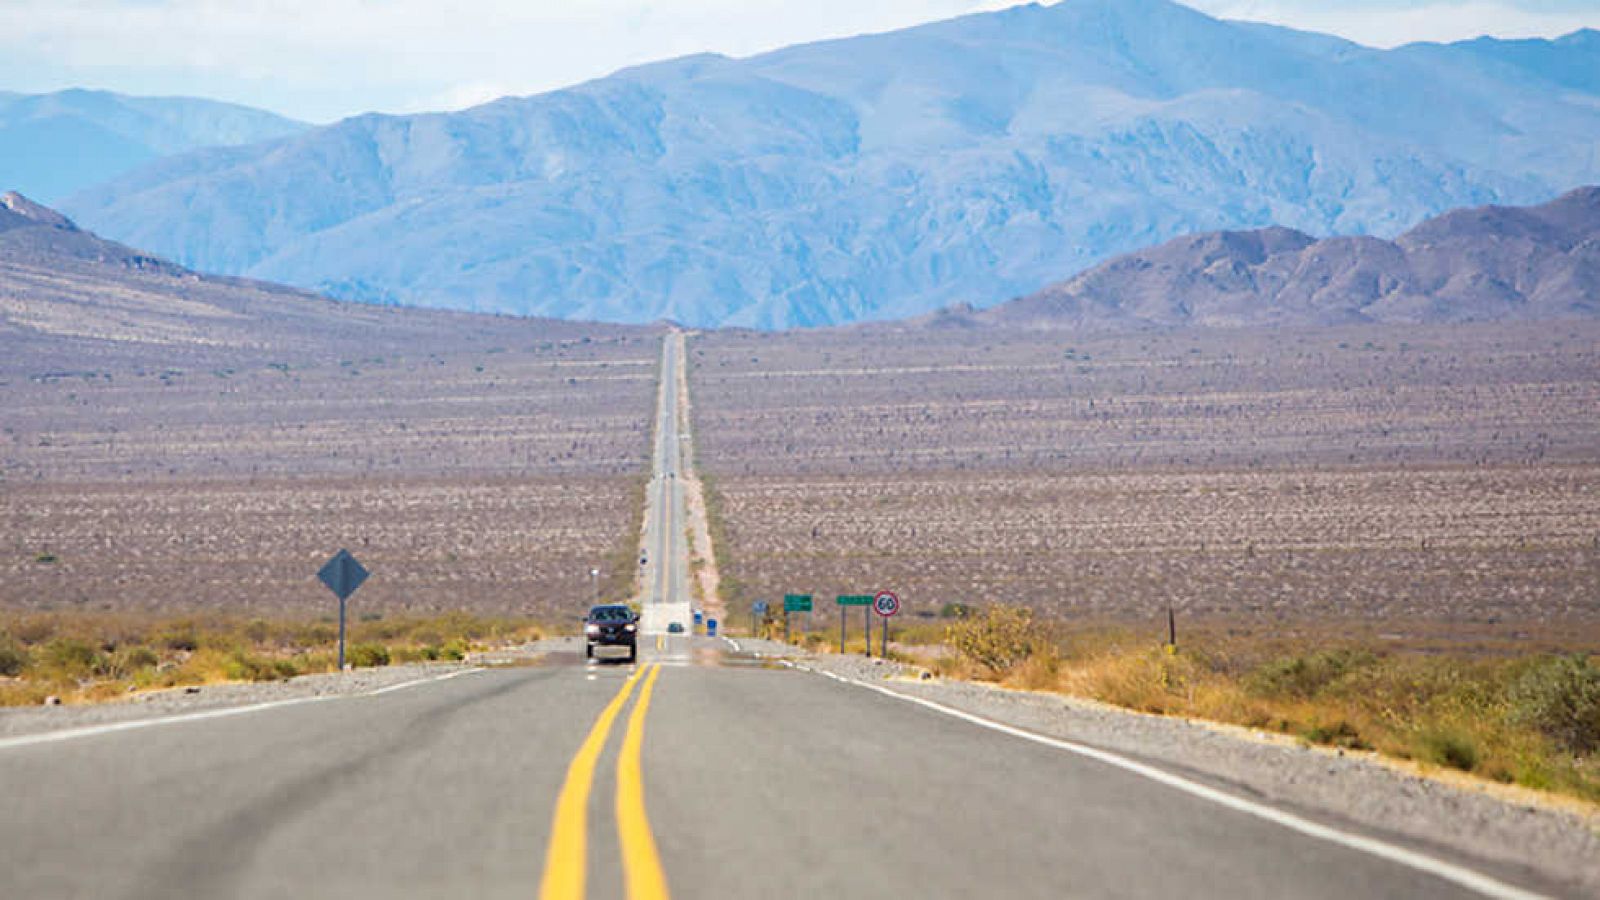 Grandes documentales - Trotamundos: Ruta 40, Los Andes